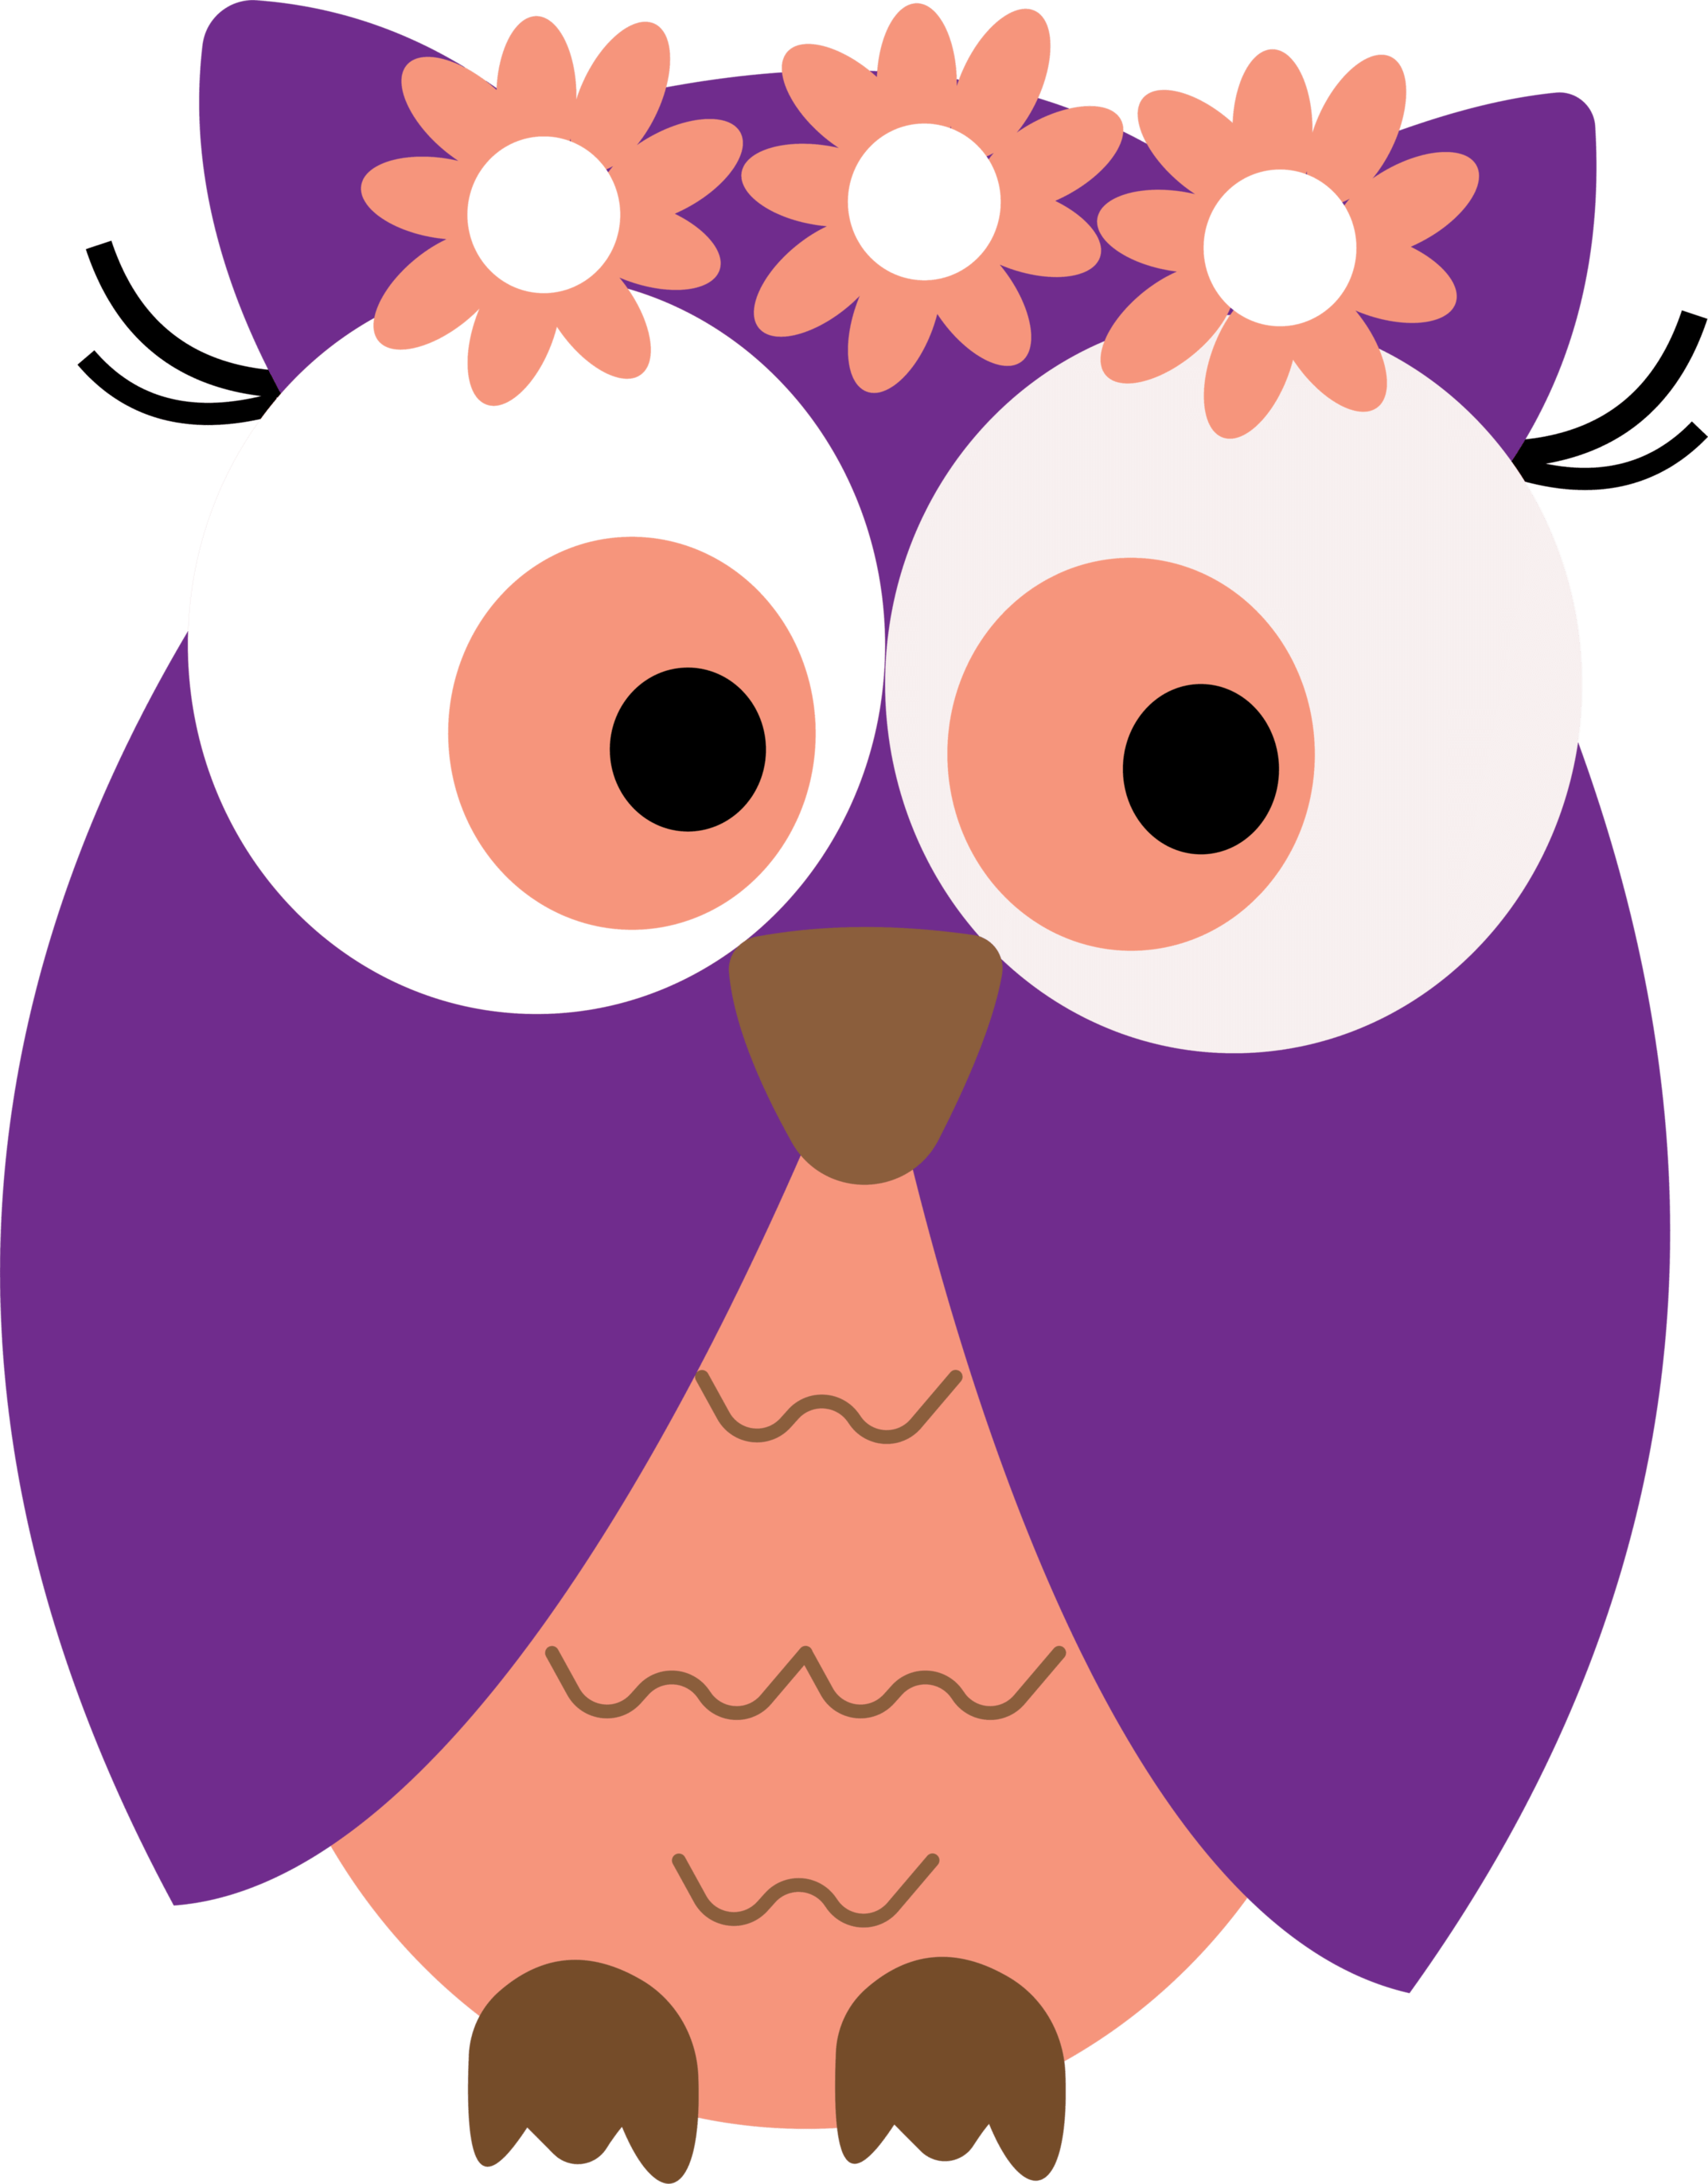 Snowy owl clip art clipart clipart owl - Cliparting.com